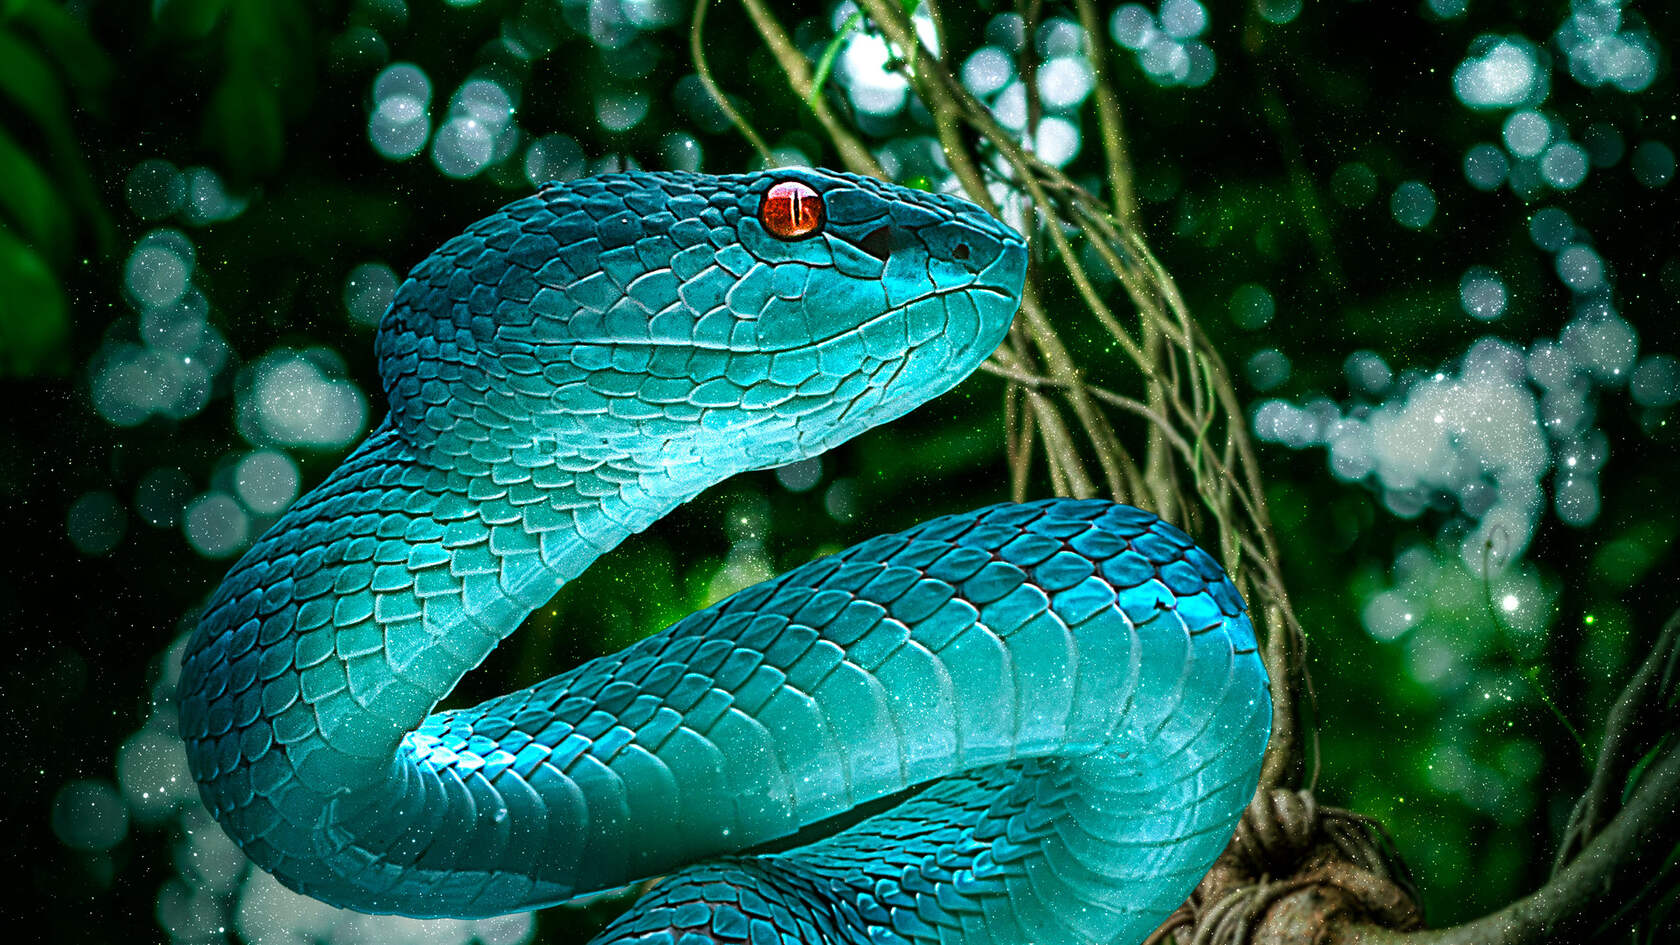 让人闻风丧胆的冷血动物“蛇”的动物壁纸图片套图1